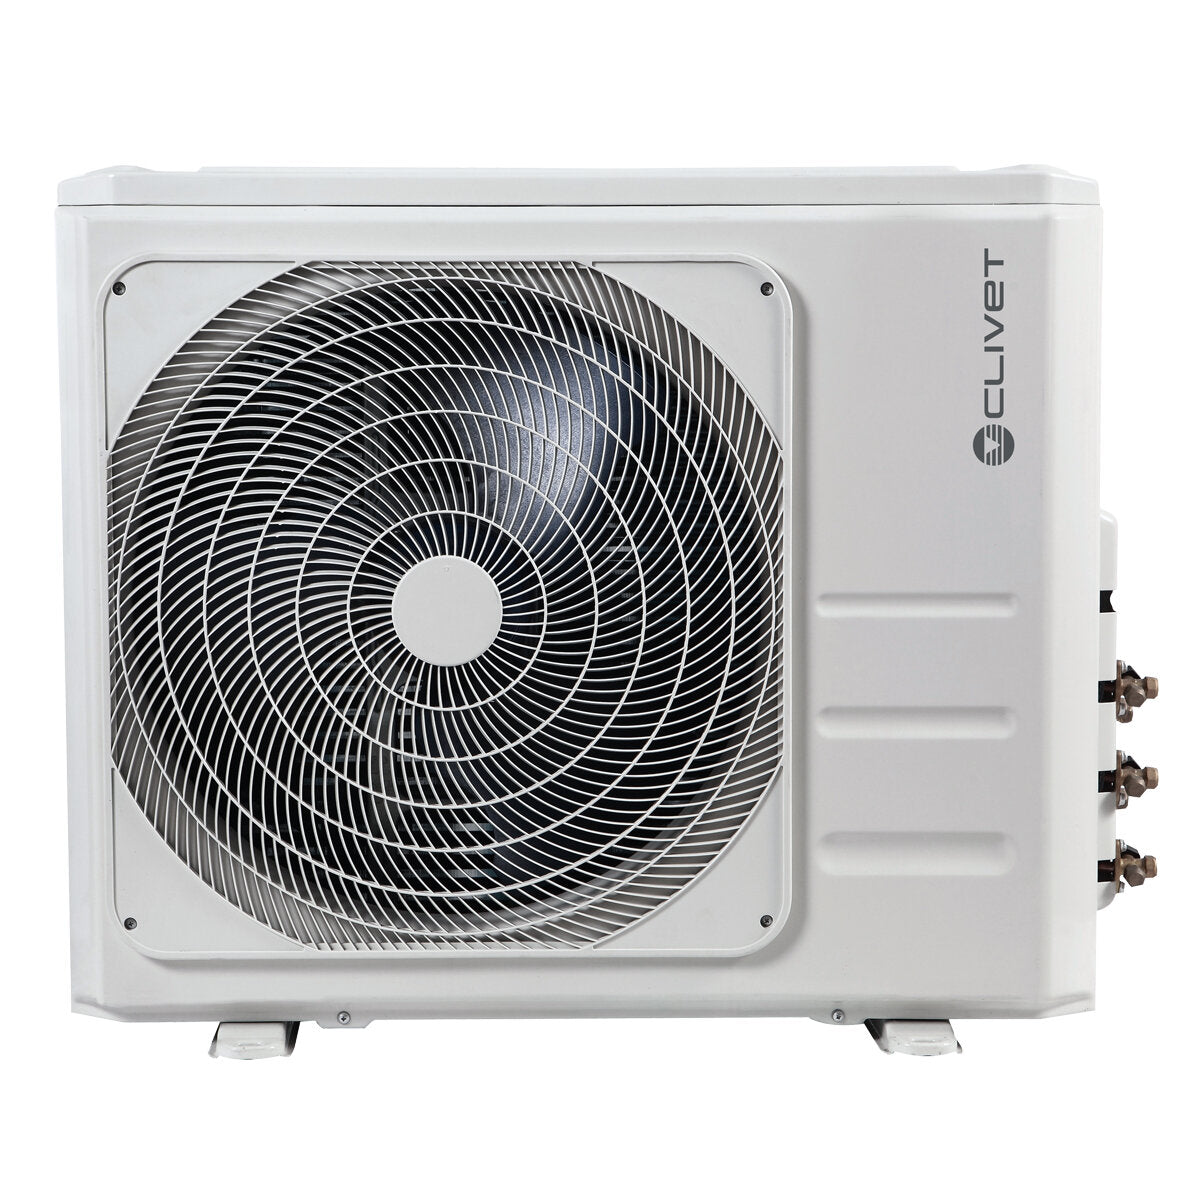 Clivet Essential 2 climatiseur penta split 9000 + 9000 + 9000 + 9000 + 12000 BTU inverter A++ unité extérieure 12,3 kW